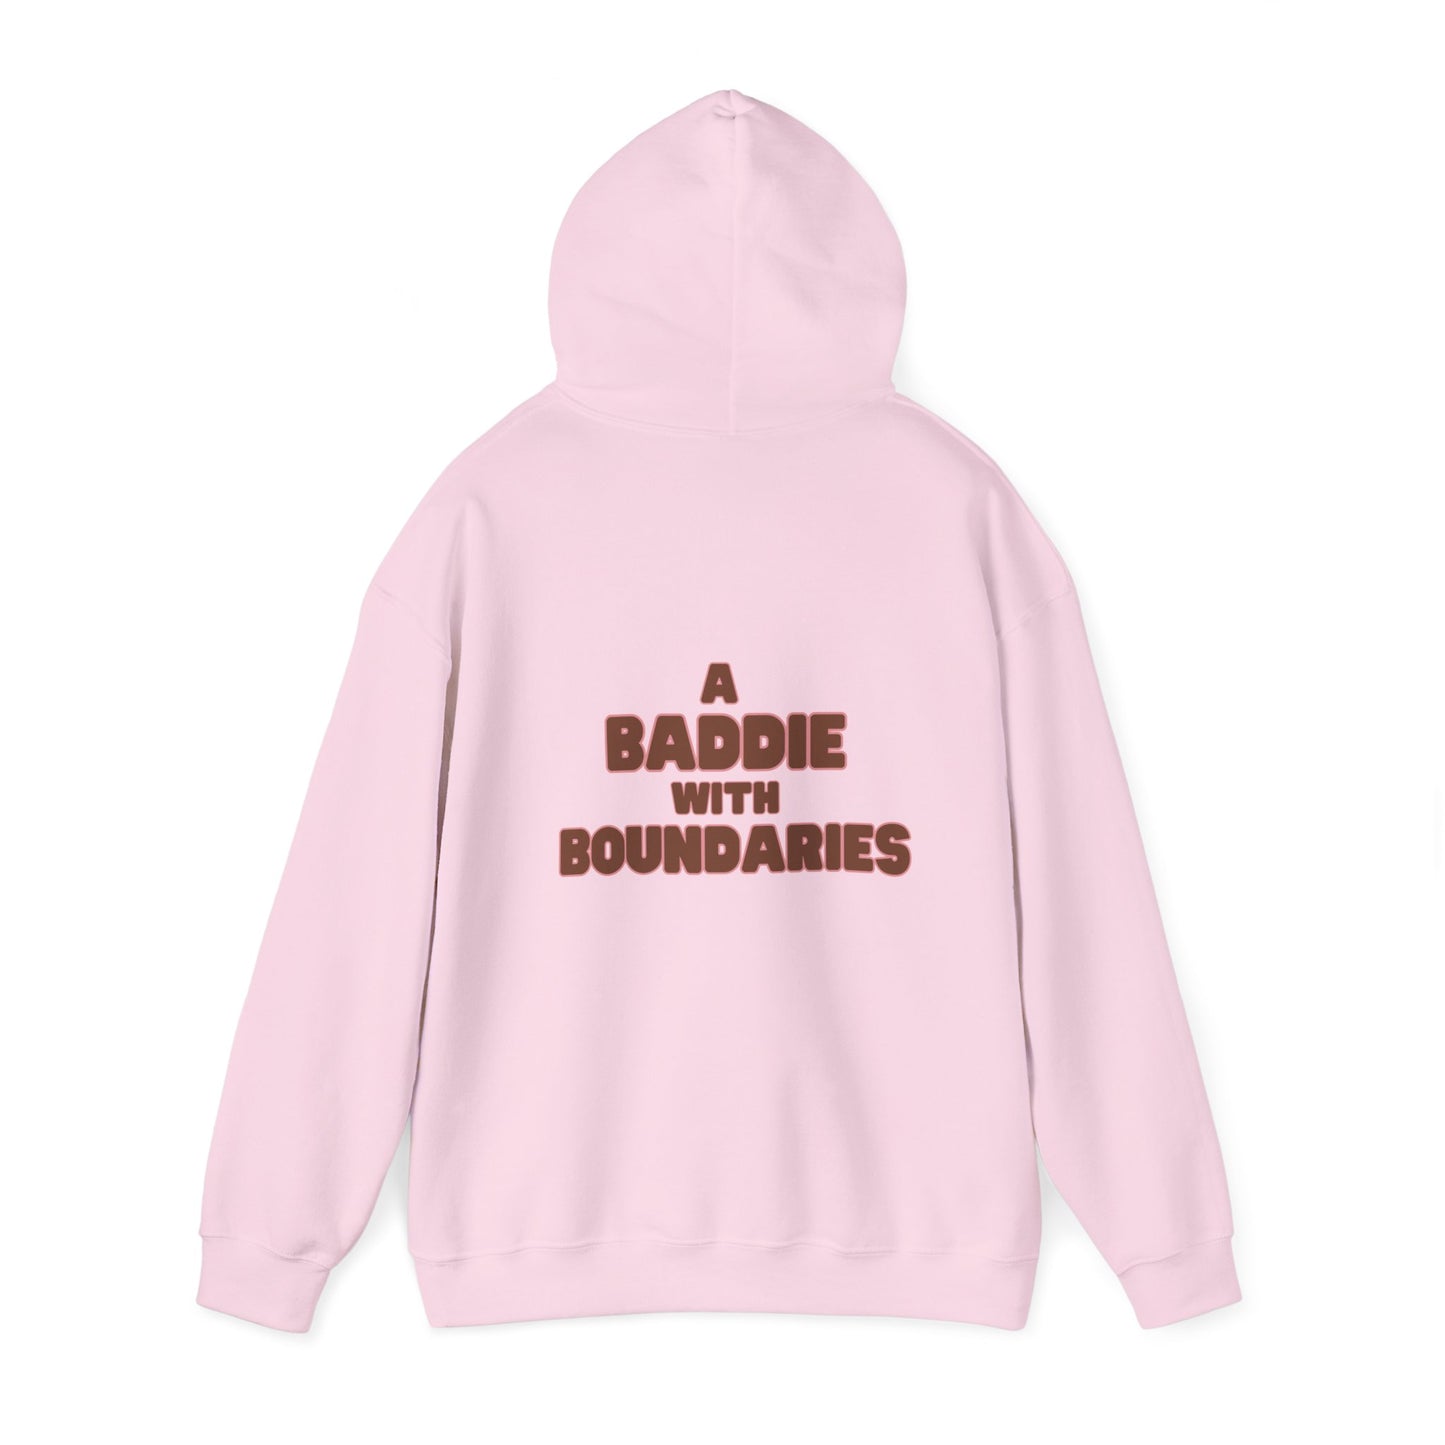 "A Baddie with Boundaries" Unisex Heavy Blend™ Hooded Sweatshirt